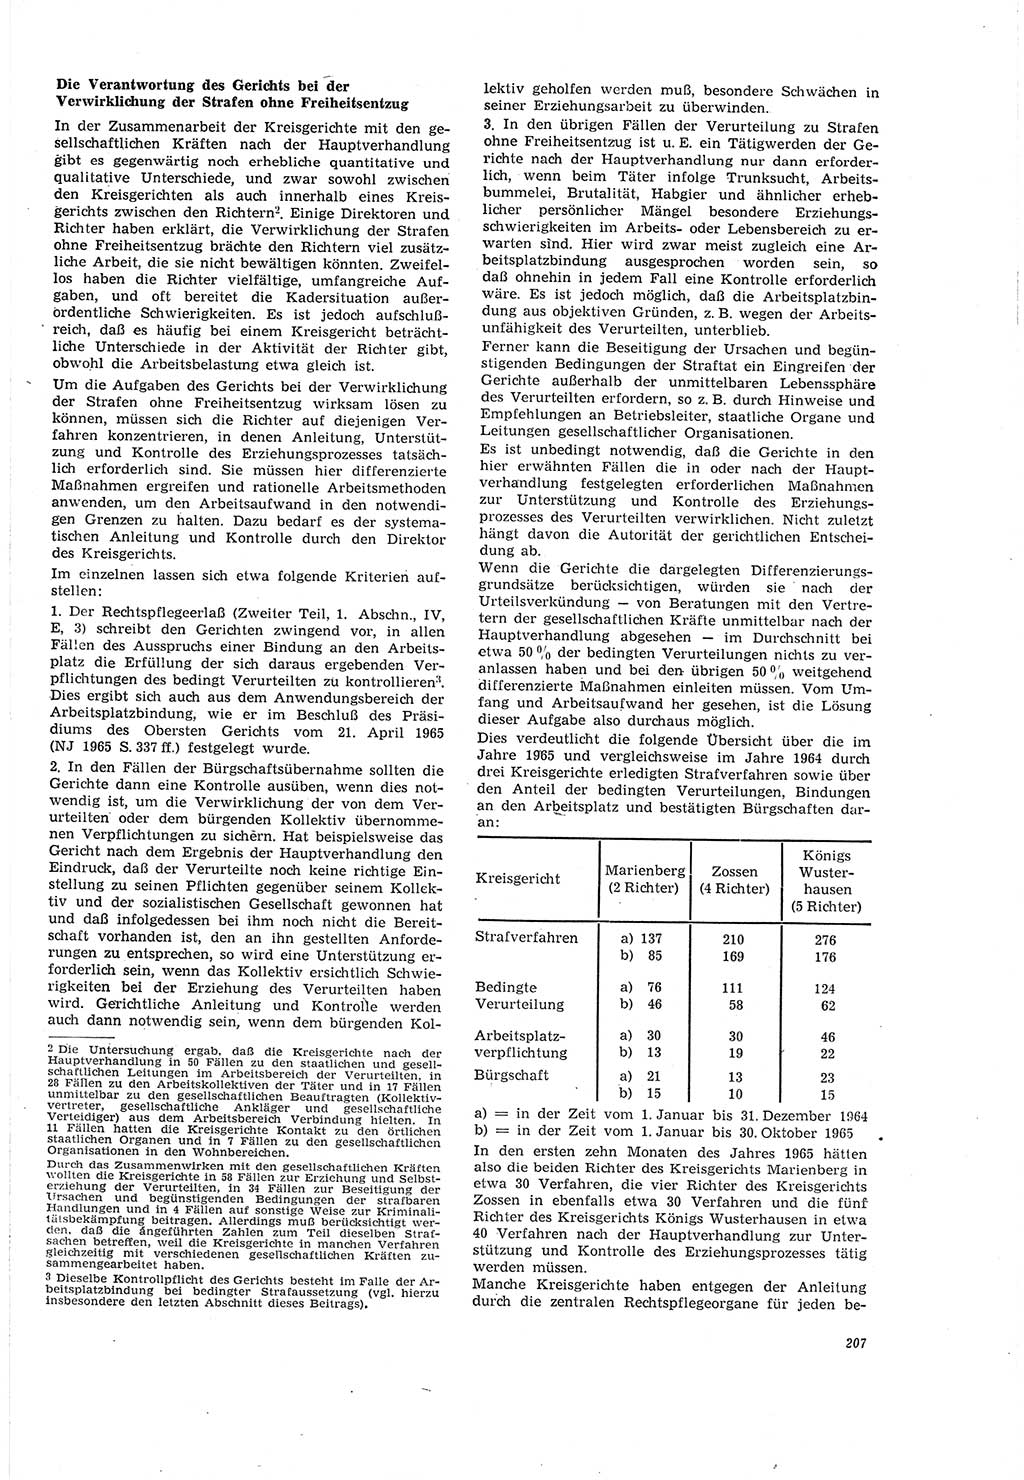 Neue Justiz (NJ), Zeitschrift für Recht und Rechtswissenschaft [Deutsche Demokratische Republik (DDR)], 20. Jahrgang 1966, Seite 207 (NJ DDR 1966, S. 207)